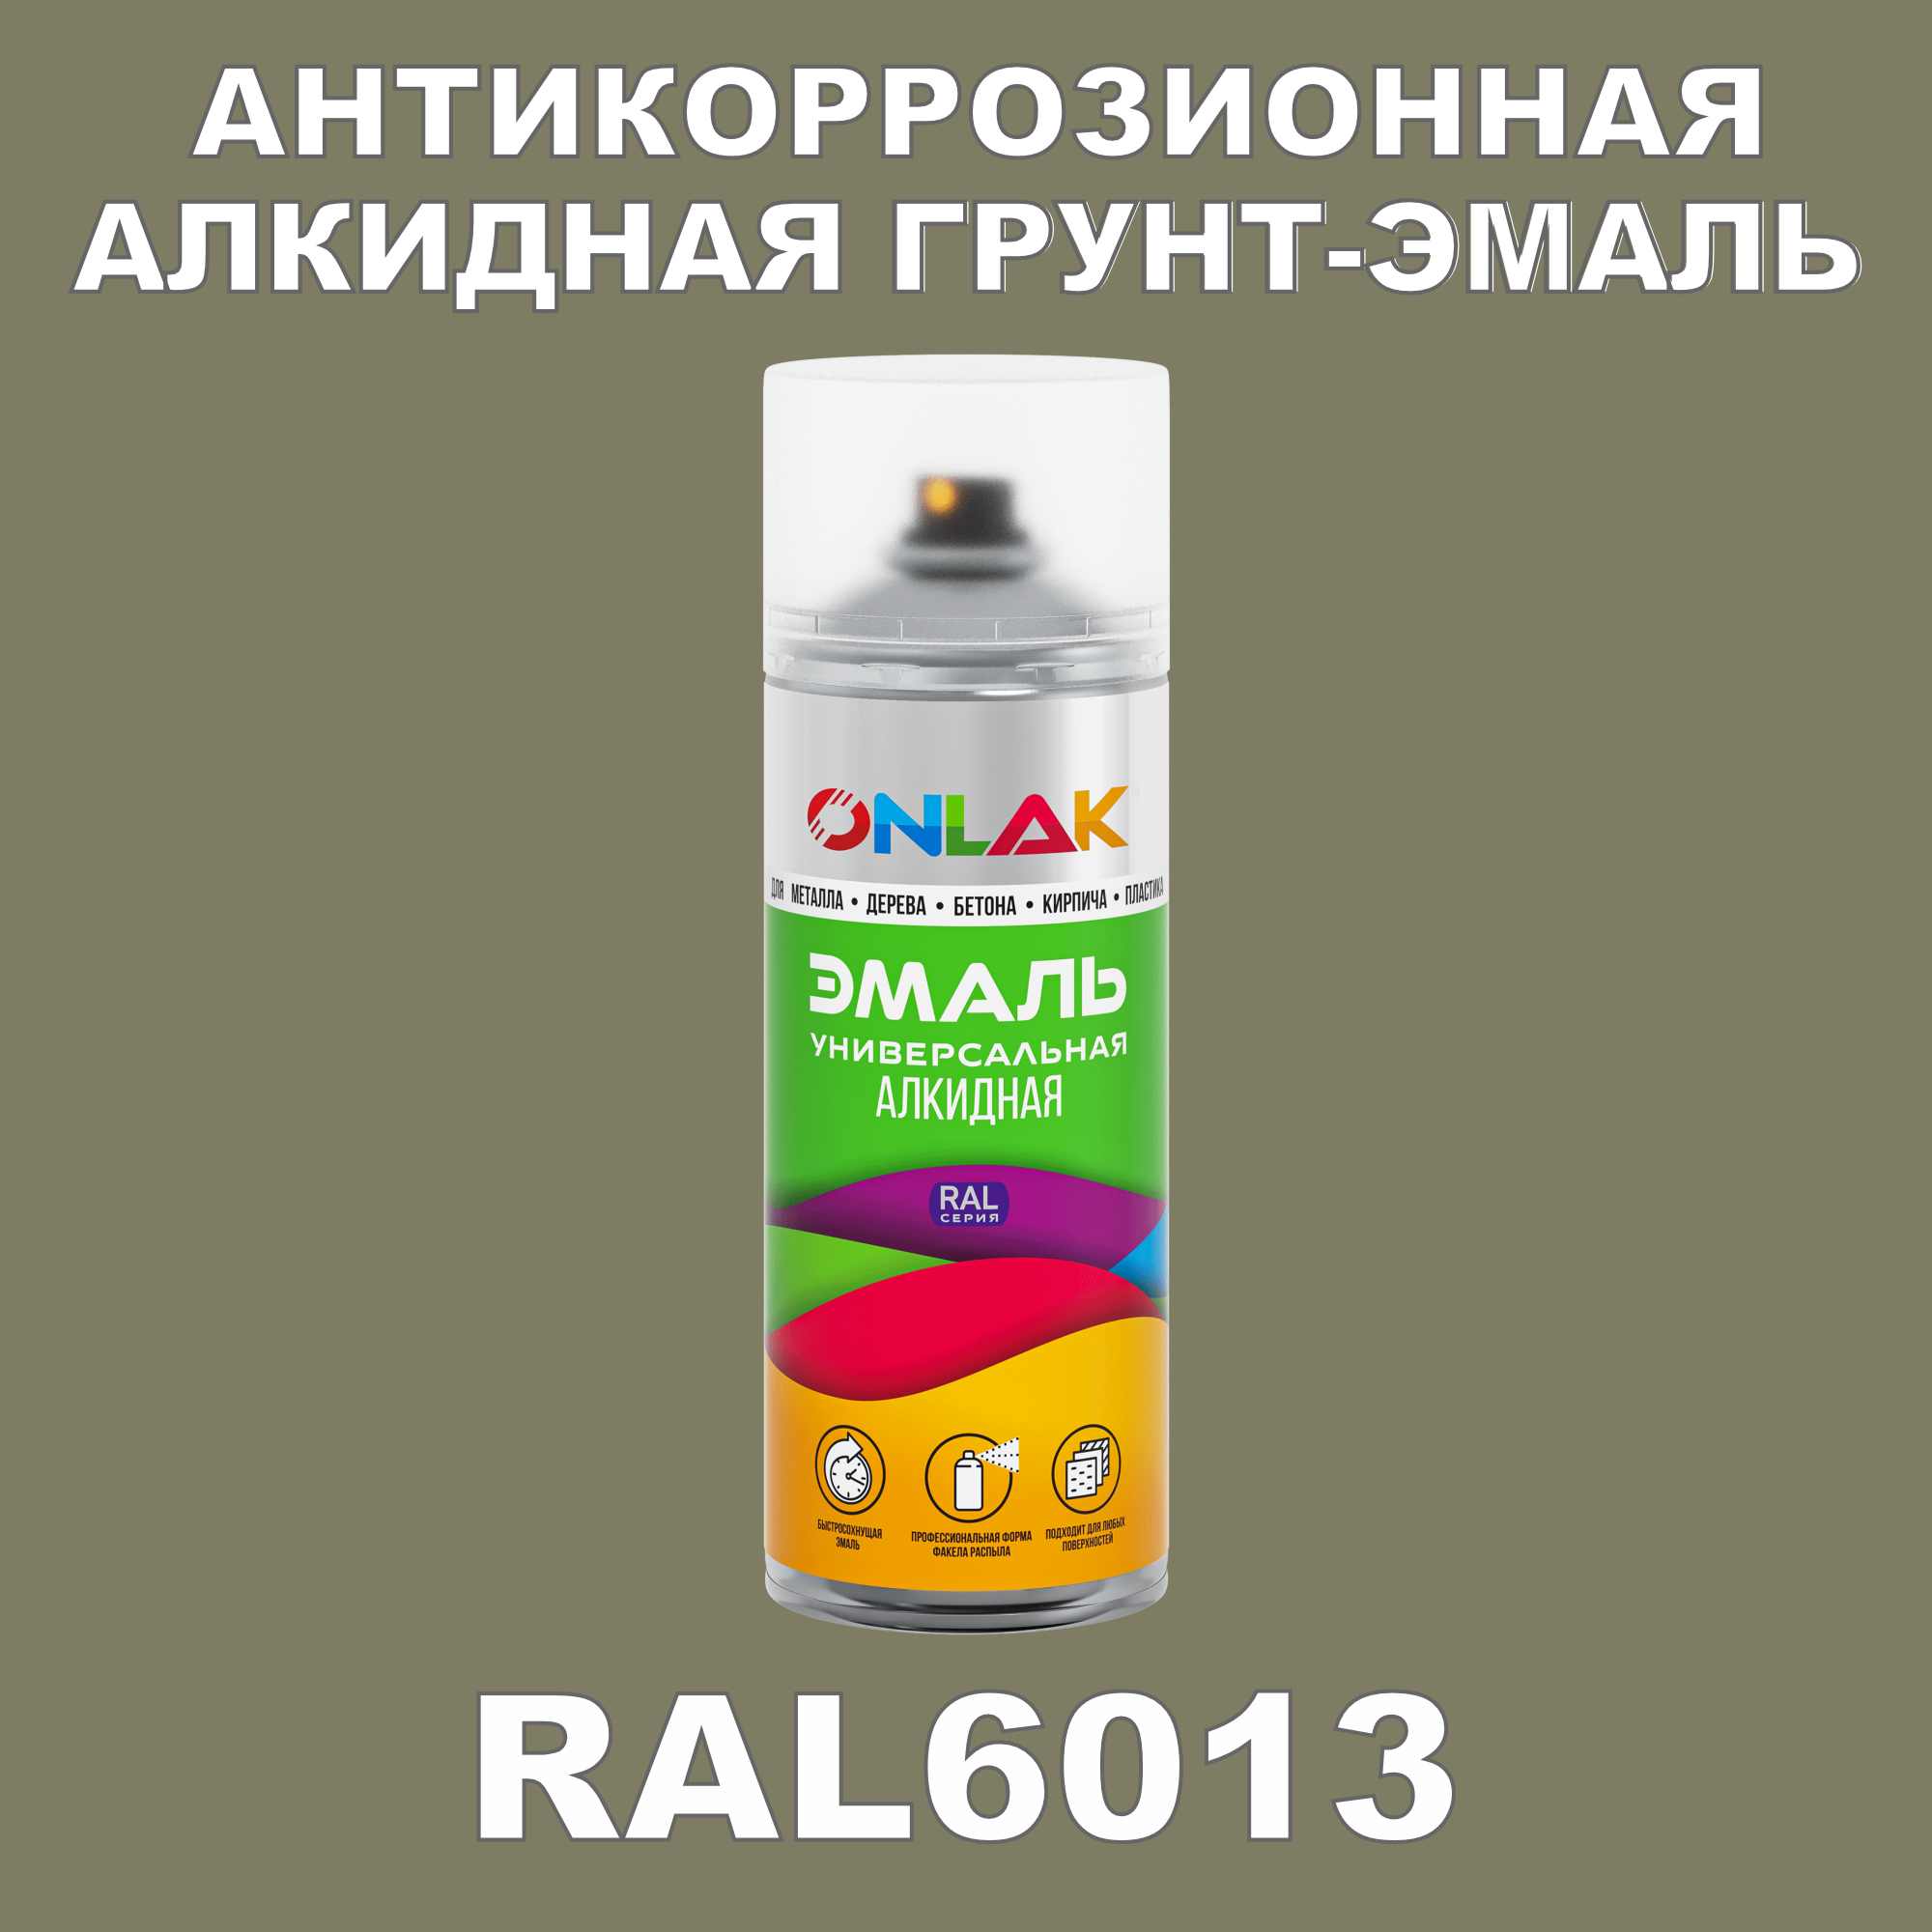 Антикоррозионная грунт-эмаль ONLAK RAL 6013,зеленый,643 мл фильтр для краскопульта scentury 30 mesh зеленый